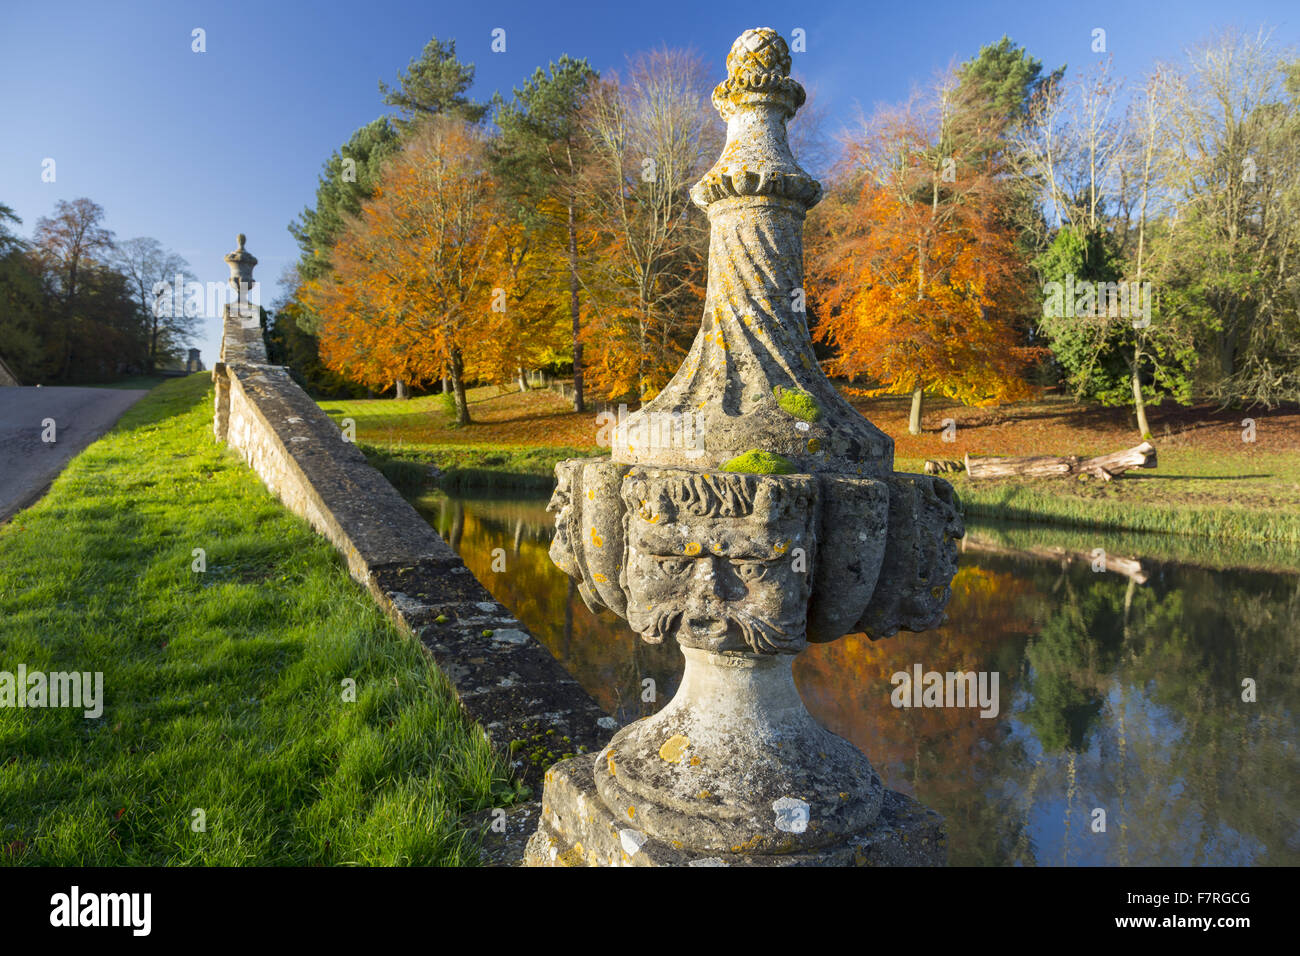 Un dettaglio del ponte di Oxford in autunno a Stowe, Buckinghamshire. Stowe è un giardino paesaggistico con picture-in perfetta opinioni, sentieri tortuosi, passeggiate in riva al lago e templi classici. Foto Stock